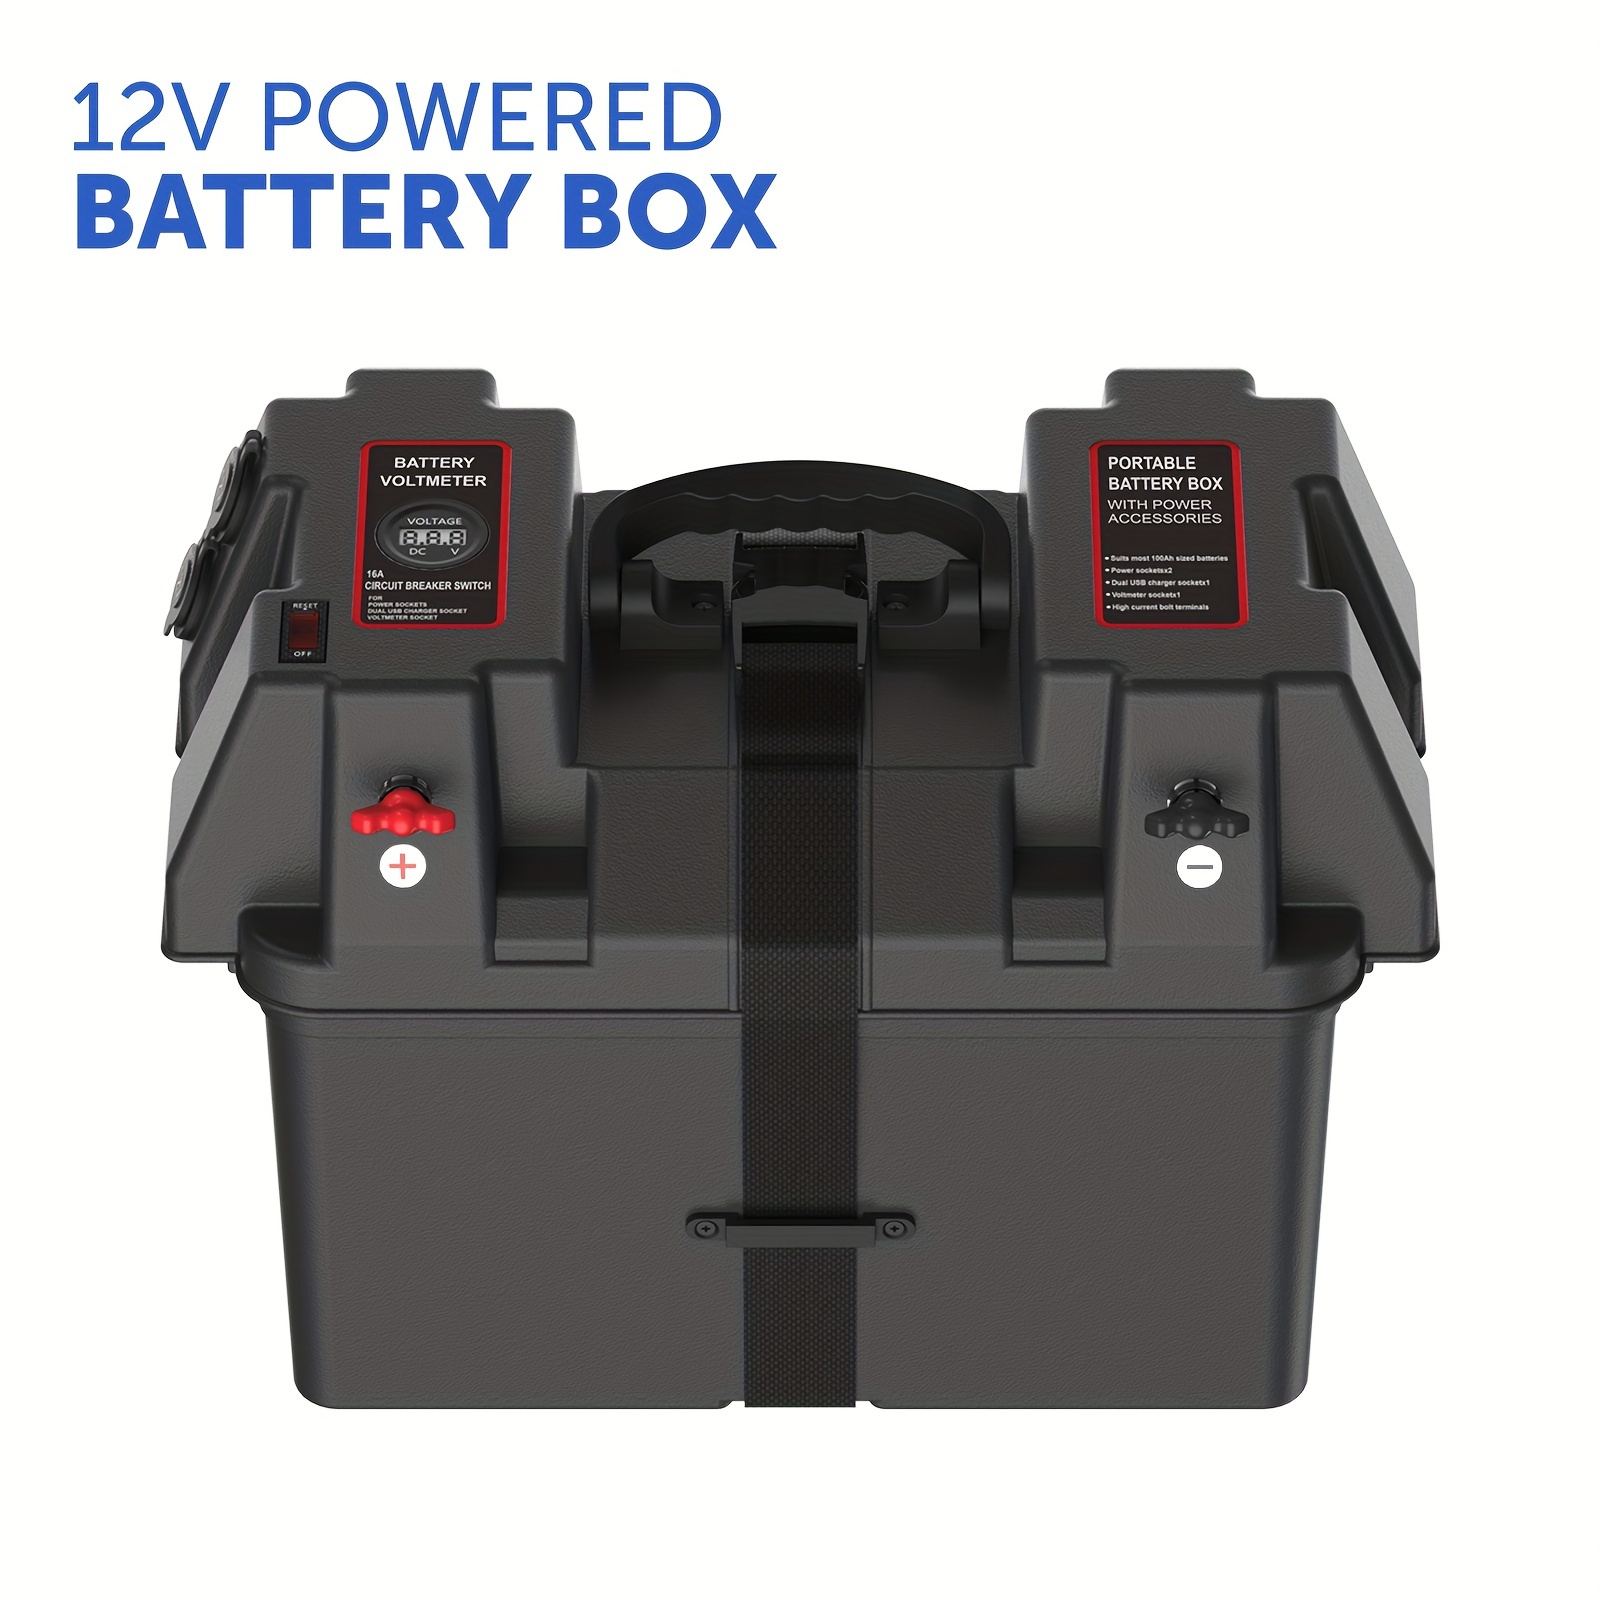 Jump Box Autobatterie - Kostenlose Rückgabe Innerhalb Von 90 Tagen - Temu  Germany